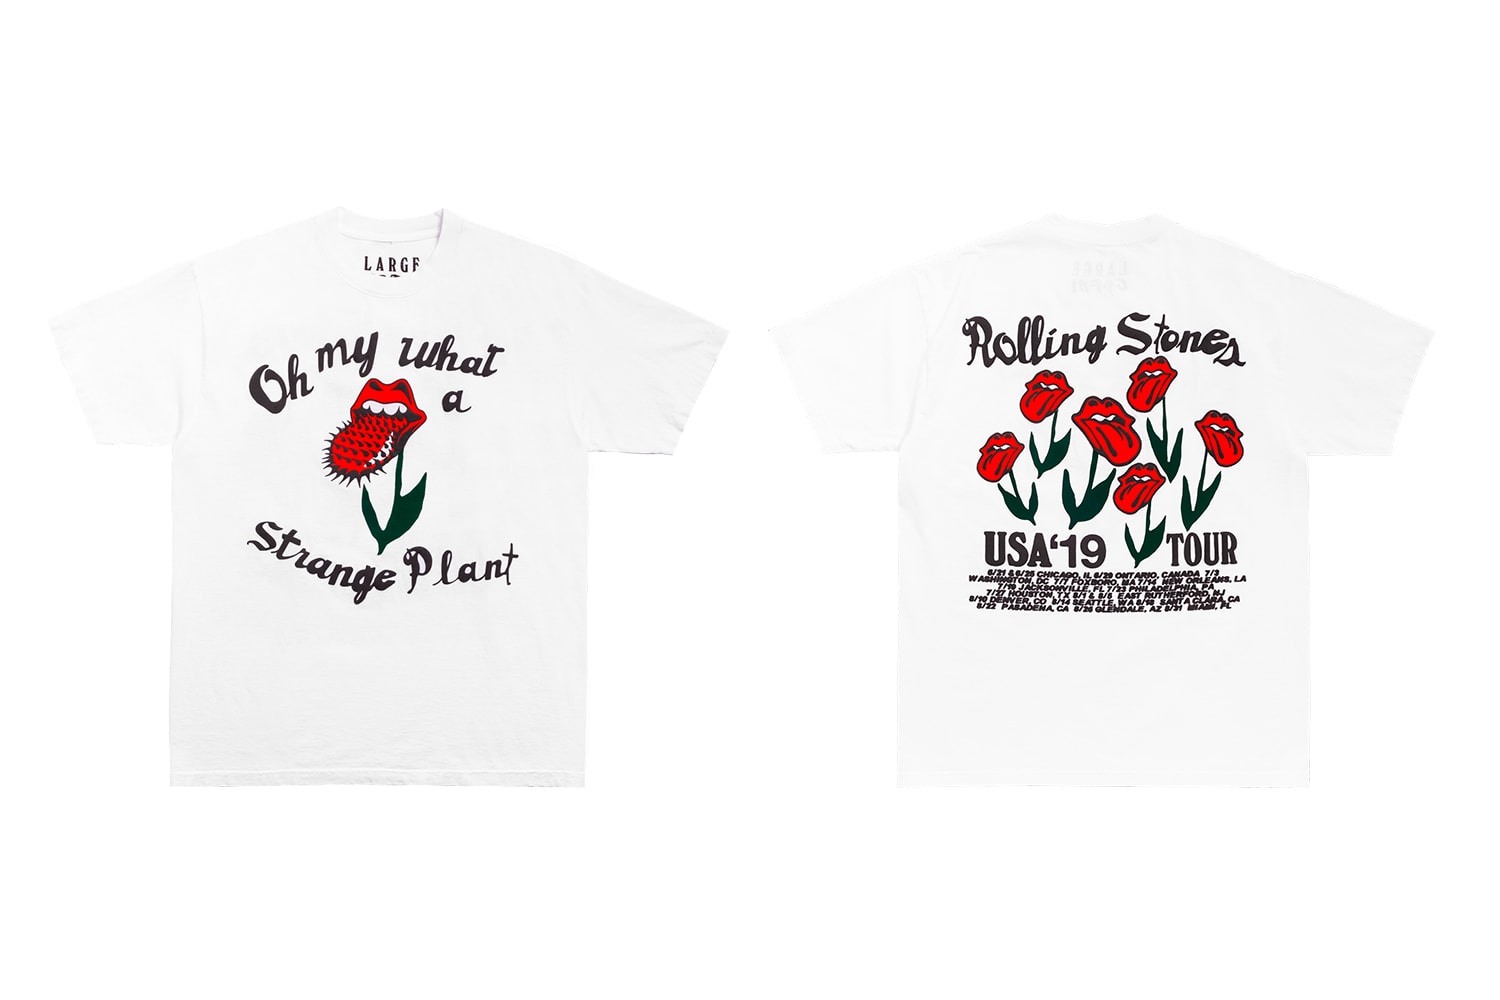 ローリングストーンズ カクタス プラント フリー マーケット The Rolling Stones Cactus Plant Flea Market No Filter US Tour Capsule Crewneck T shirt